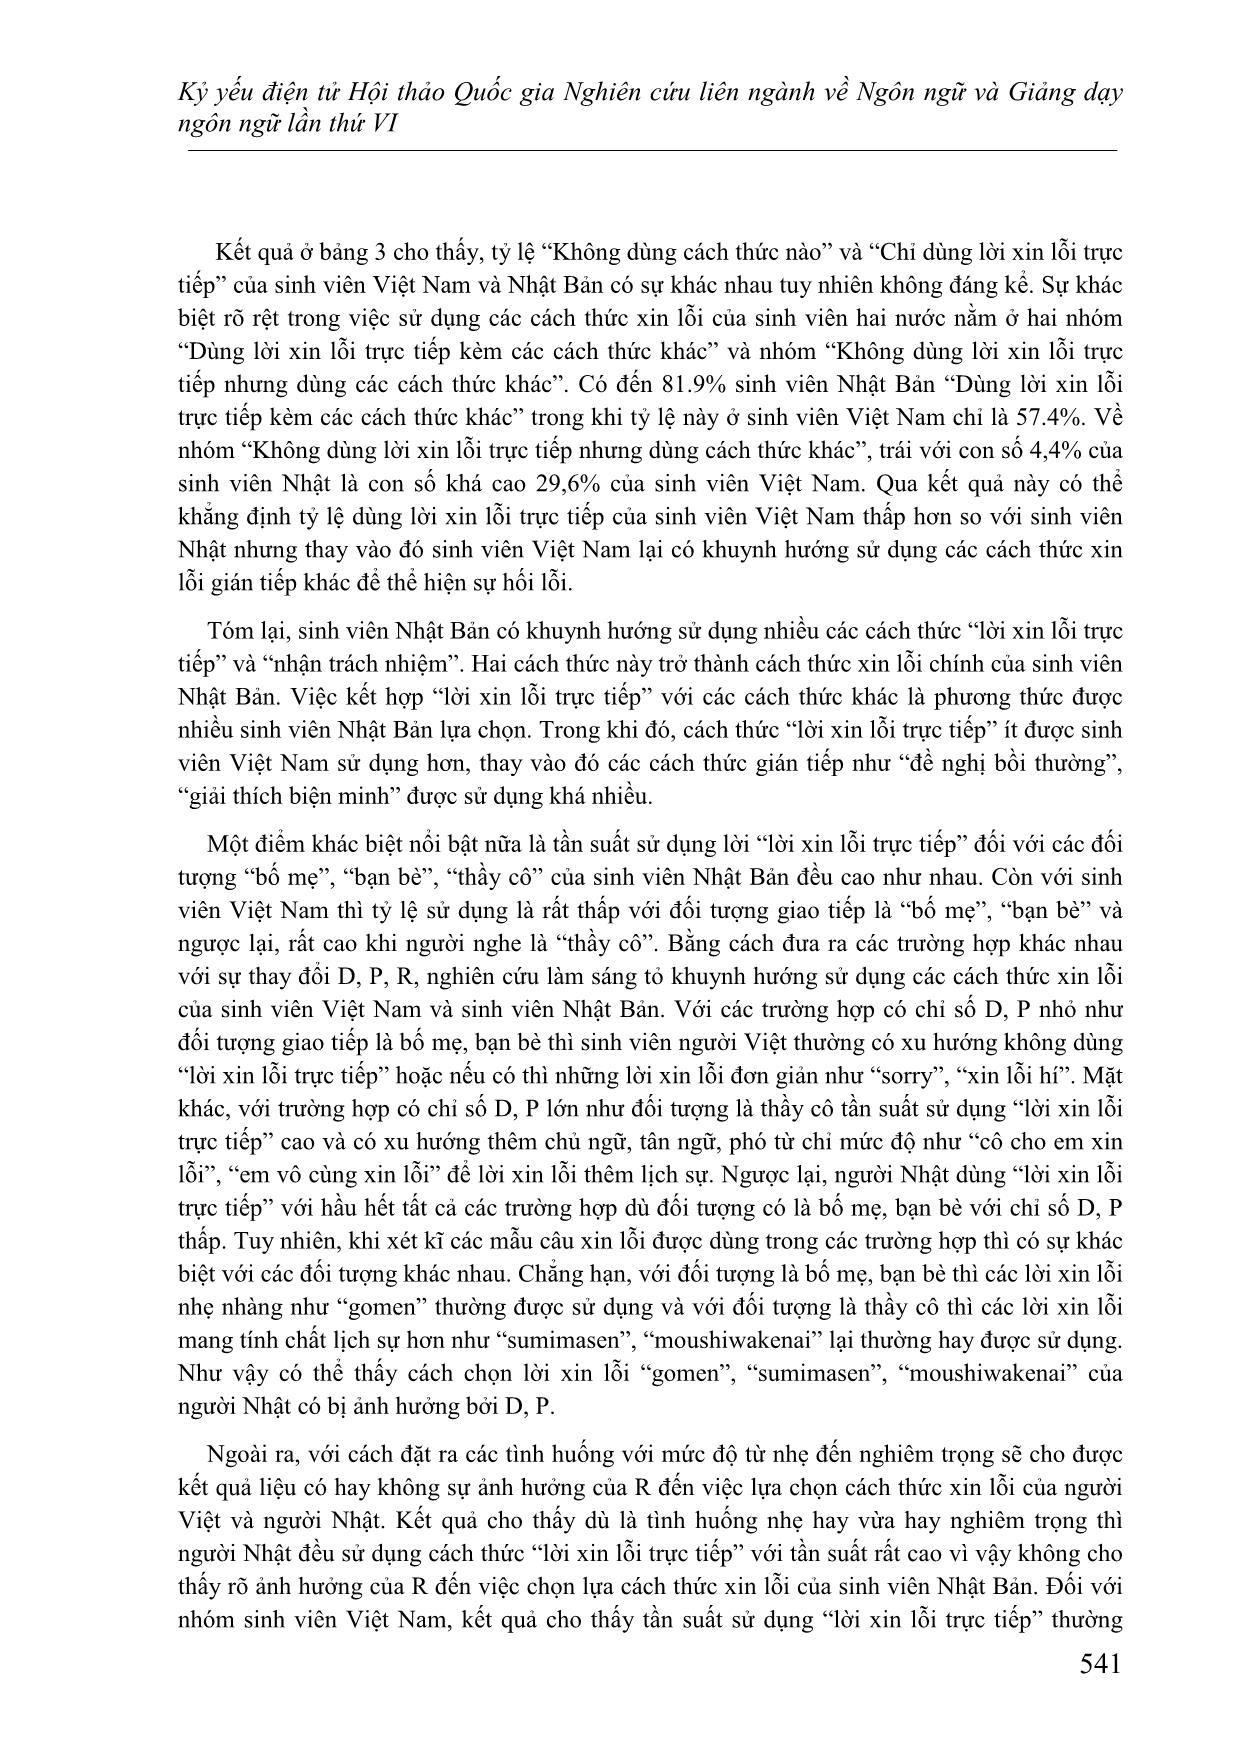 Các cách thức xin lỗi trong tiếng Việt và tiếng Nhật - Đối chiếu dựa trên lý thuyết lịch sự của Brown và Levinson trang 9